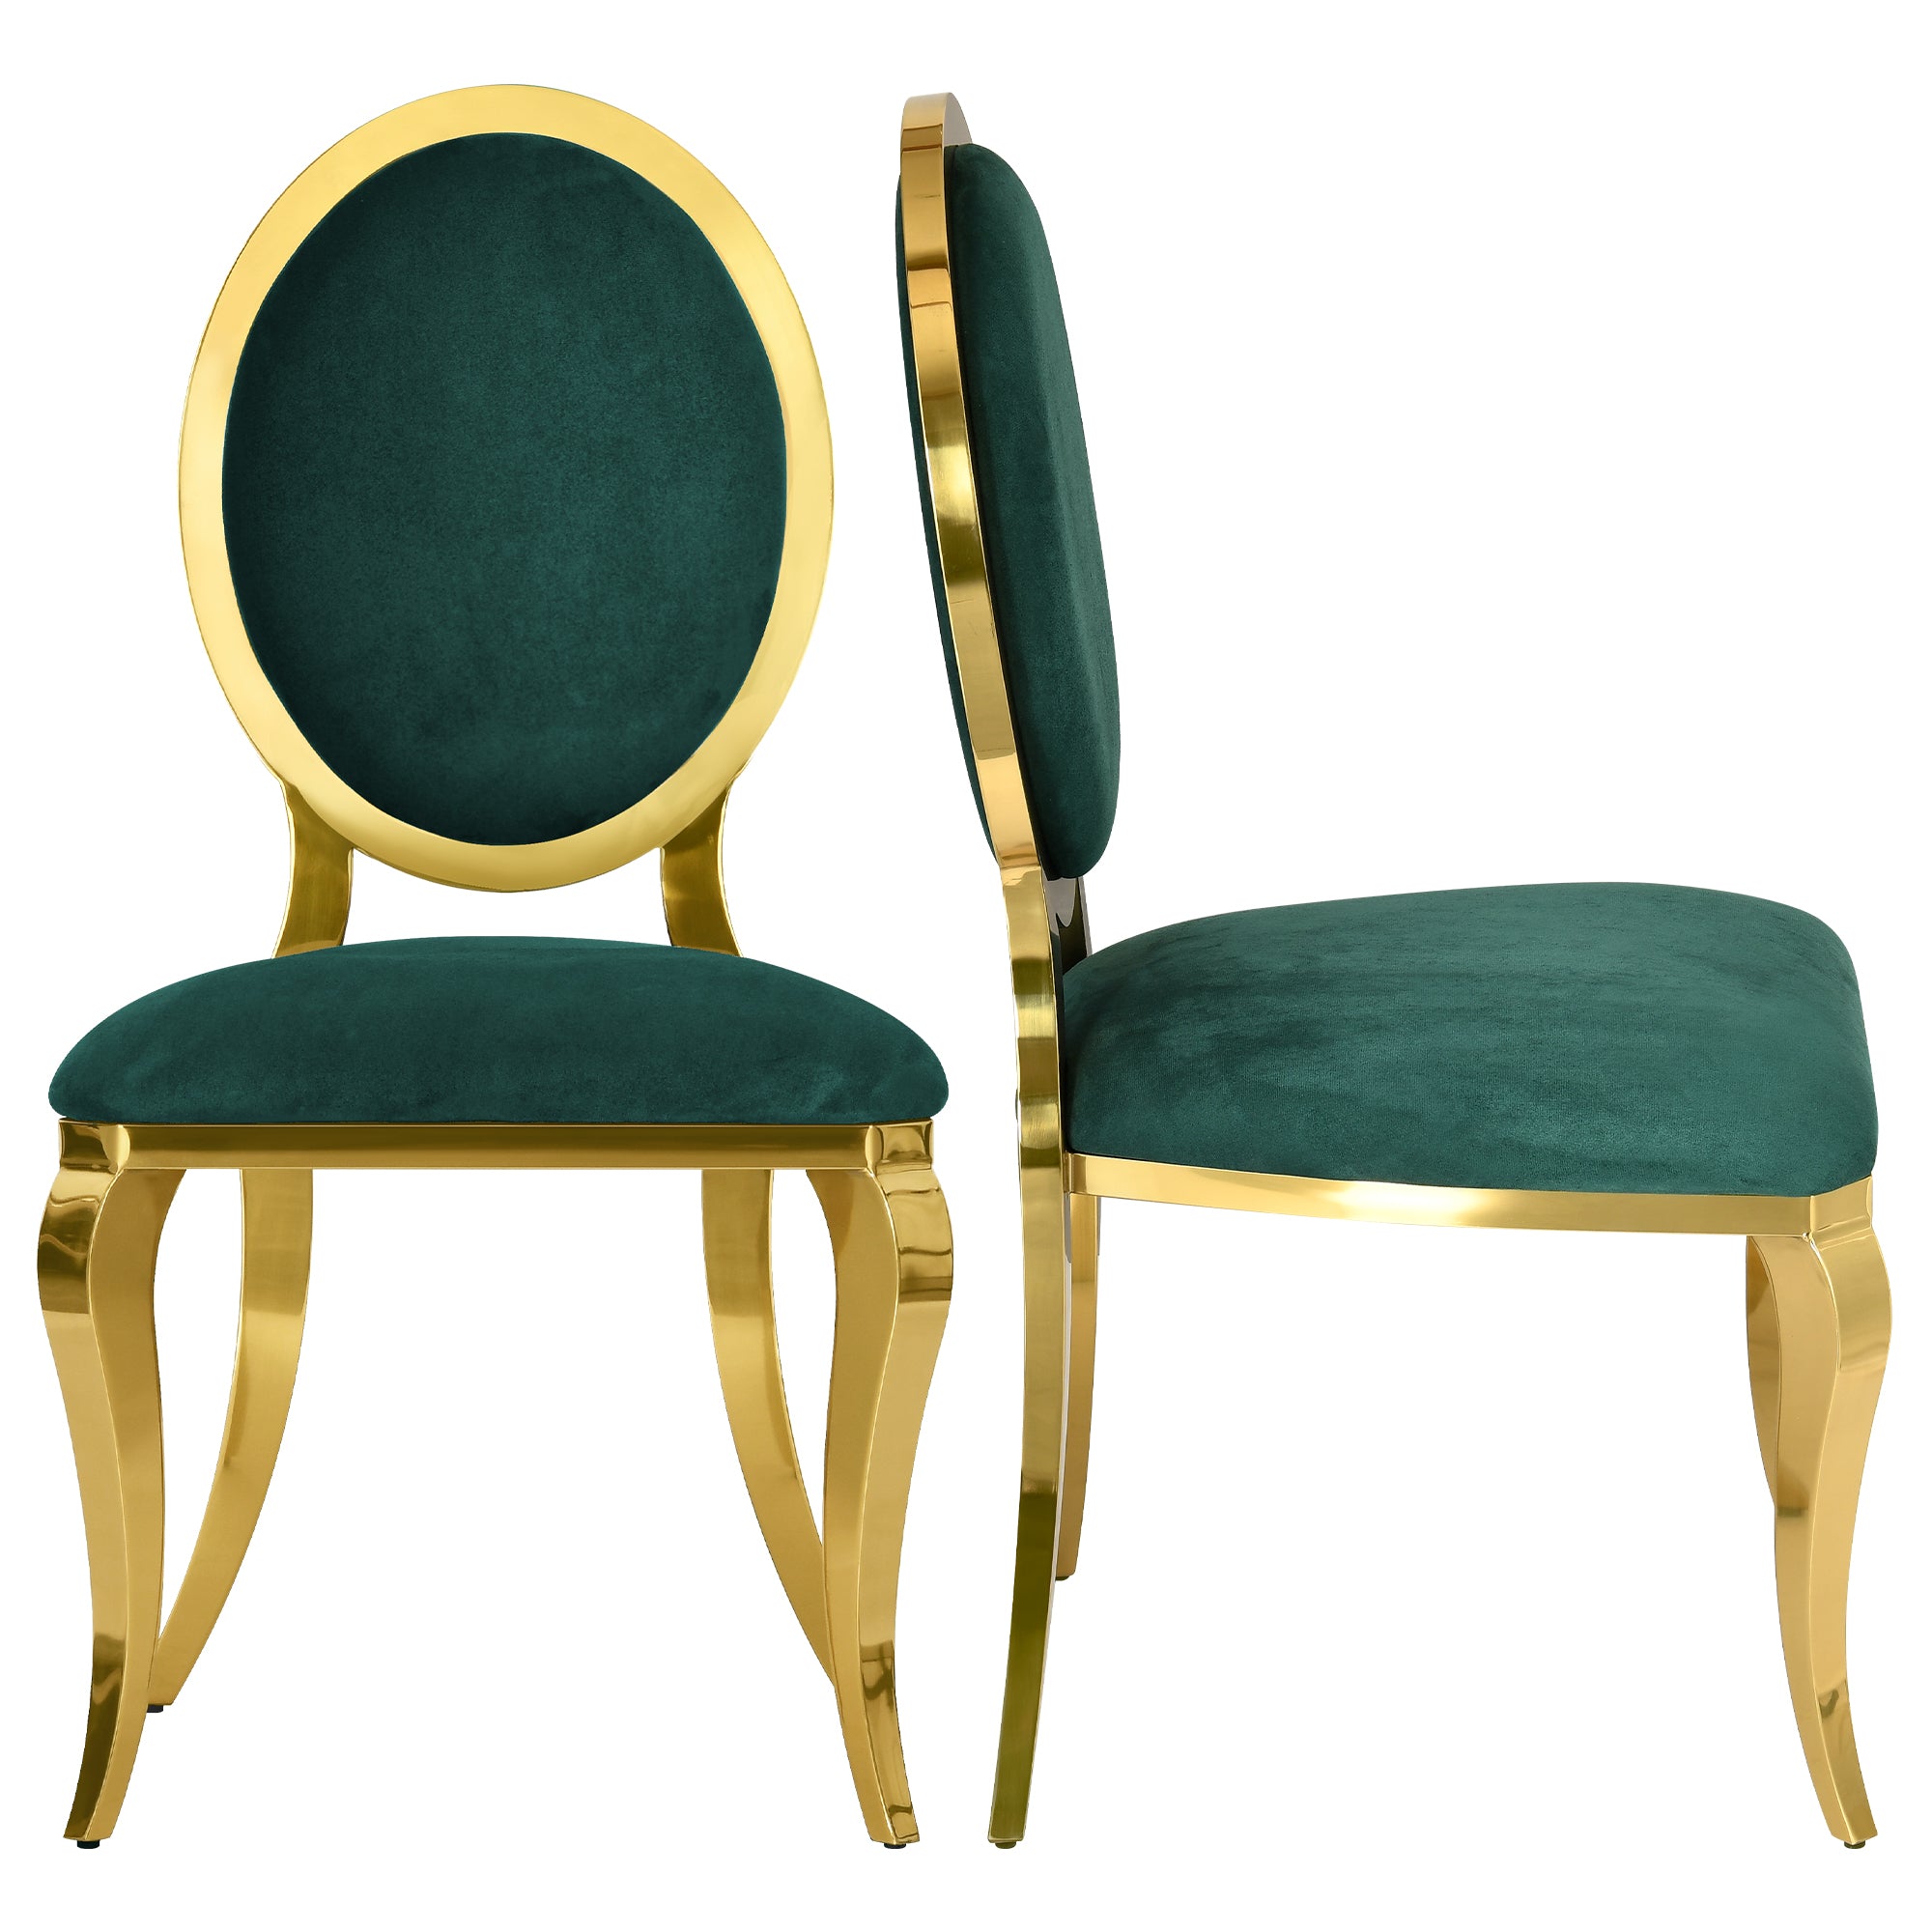 Odette Modern Velvet Dining Chair Stainless Metal Gold Frame, Green